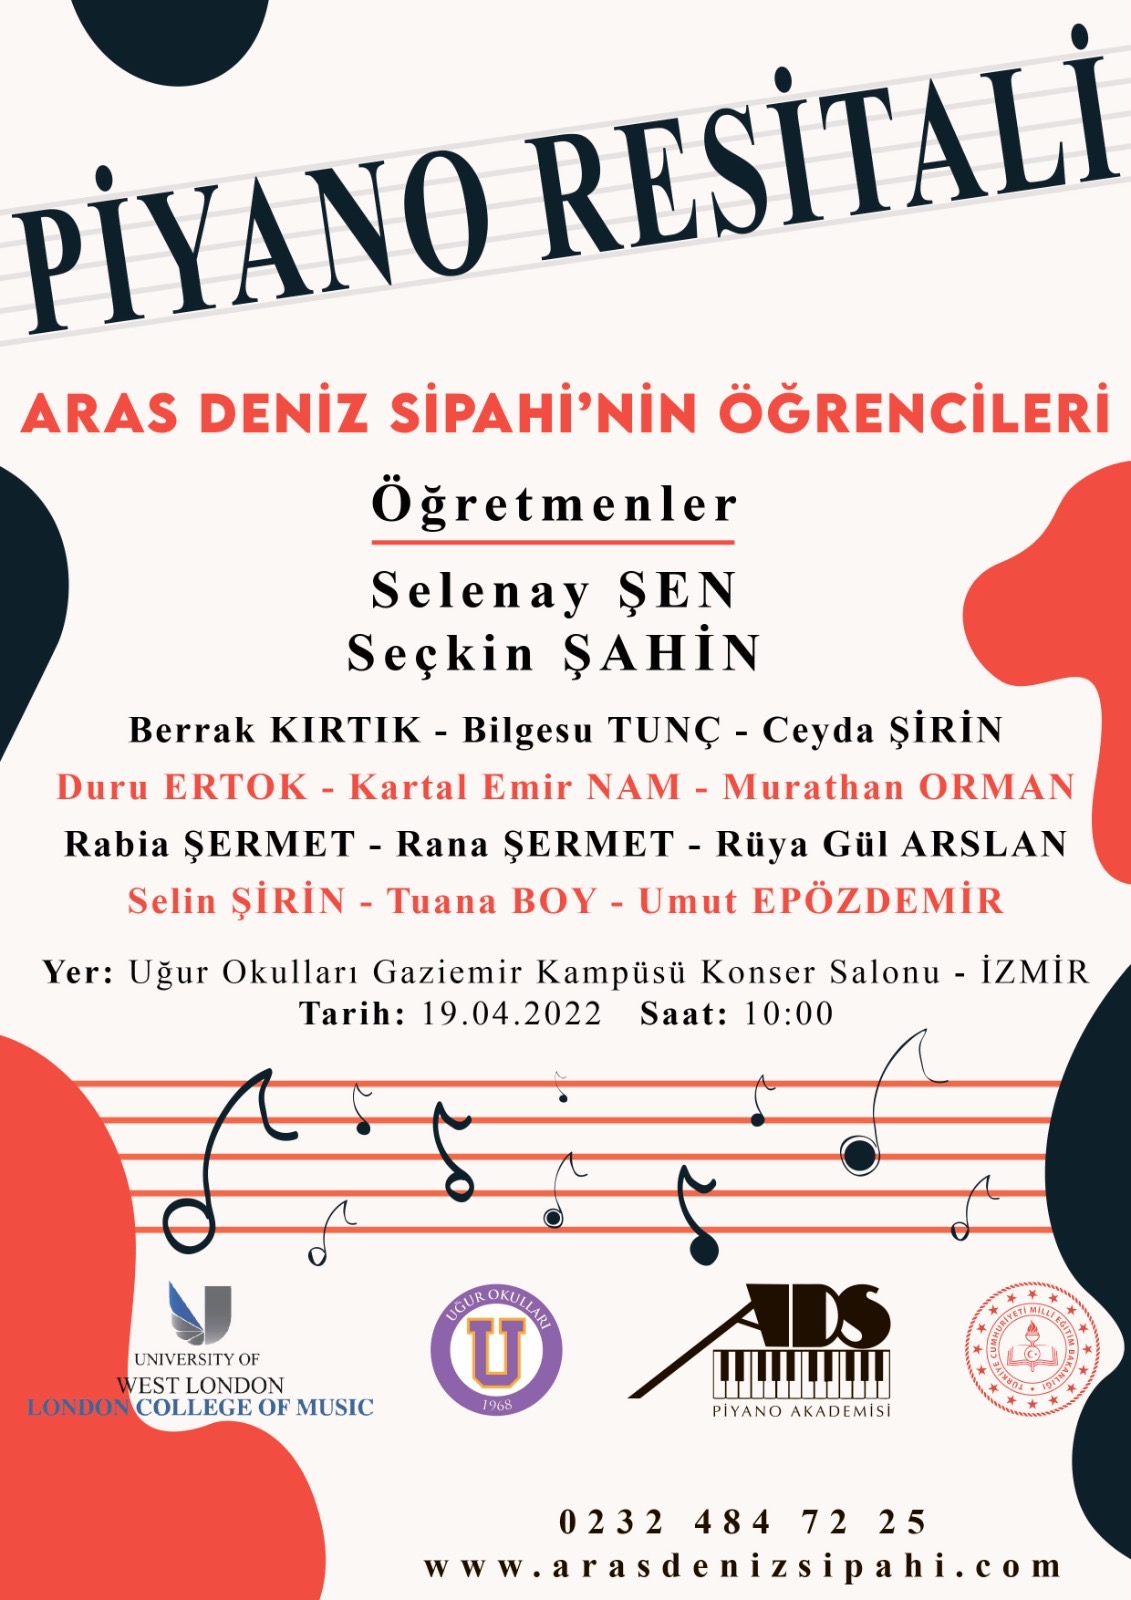 ADS Piyano Akademisi Öğrencileri Uğur Okulları Gaziemir Kampüsü Sahnesi'nde!